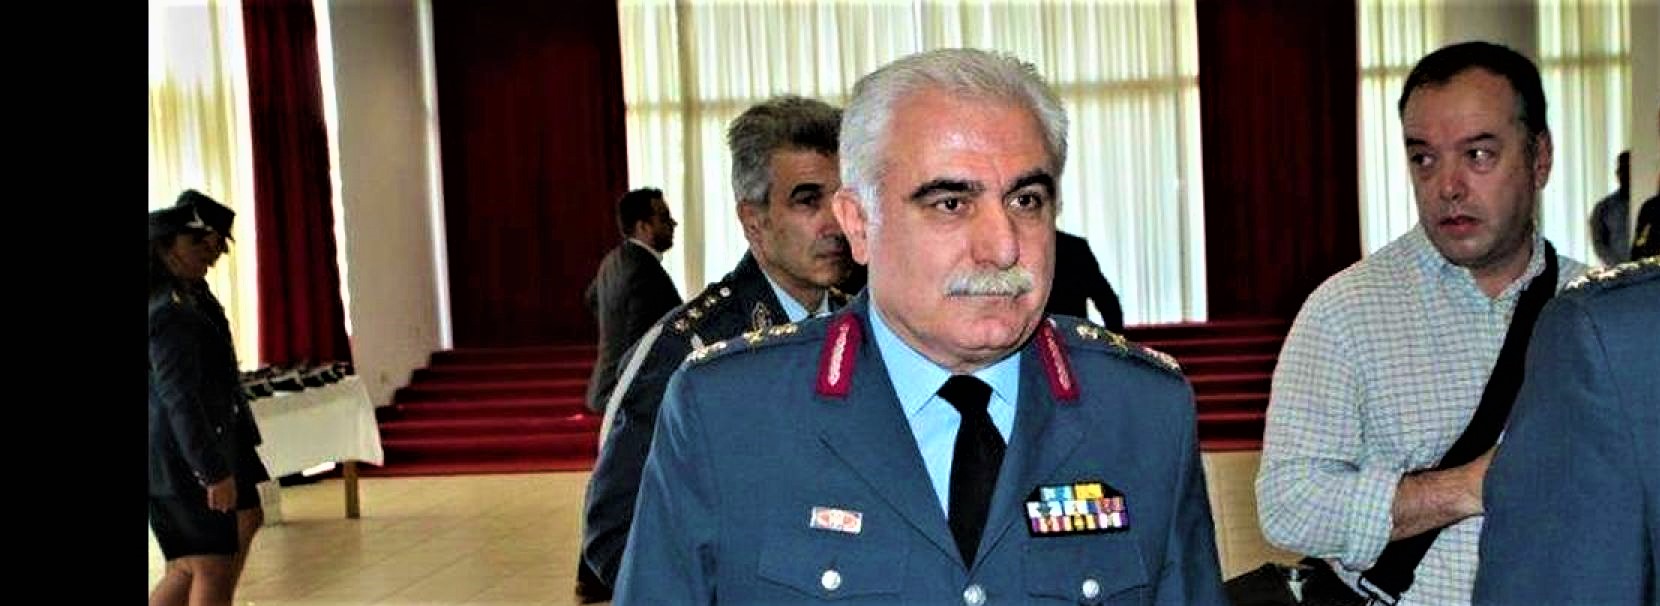 Παραιτήθηκε ο Αρχηγός της Ελληνικής Αστυνομίας στρατηγός Αριστείδης Ανδρικόπουλος! (upd)